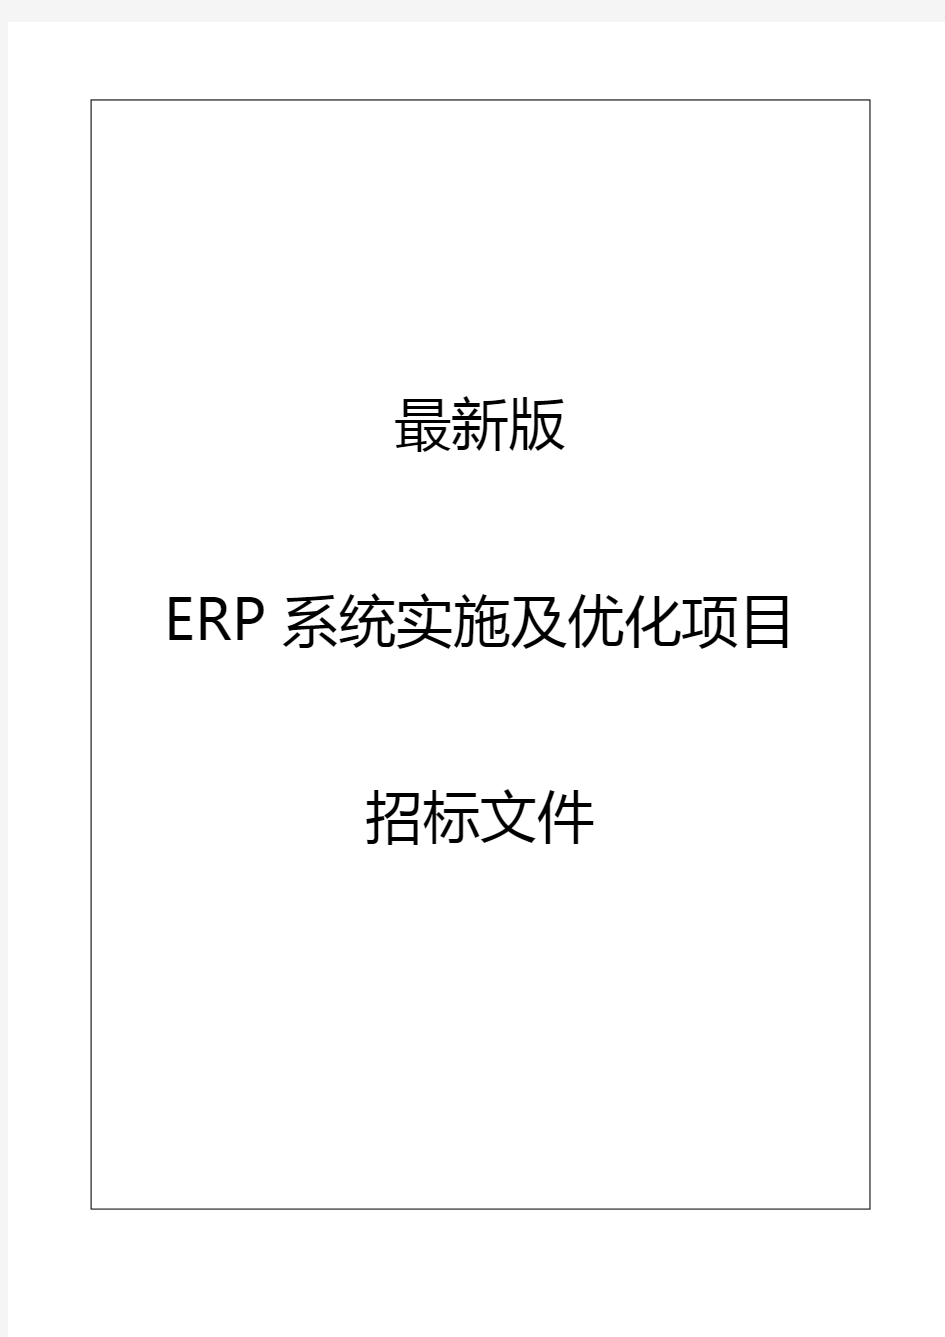 最新版ERP系统实施及优化项目招标文件